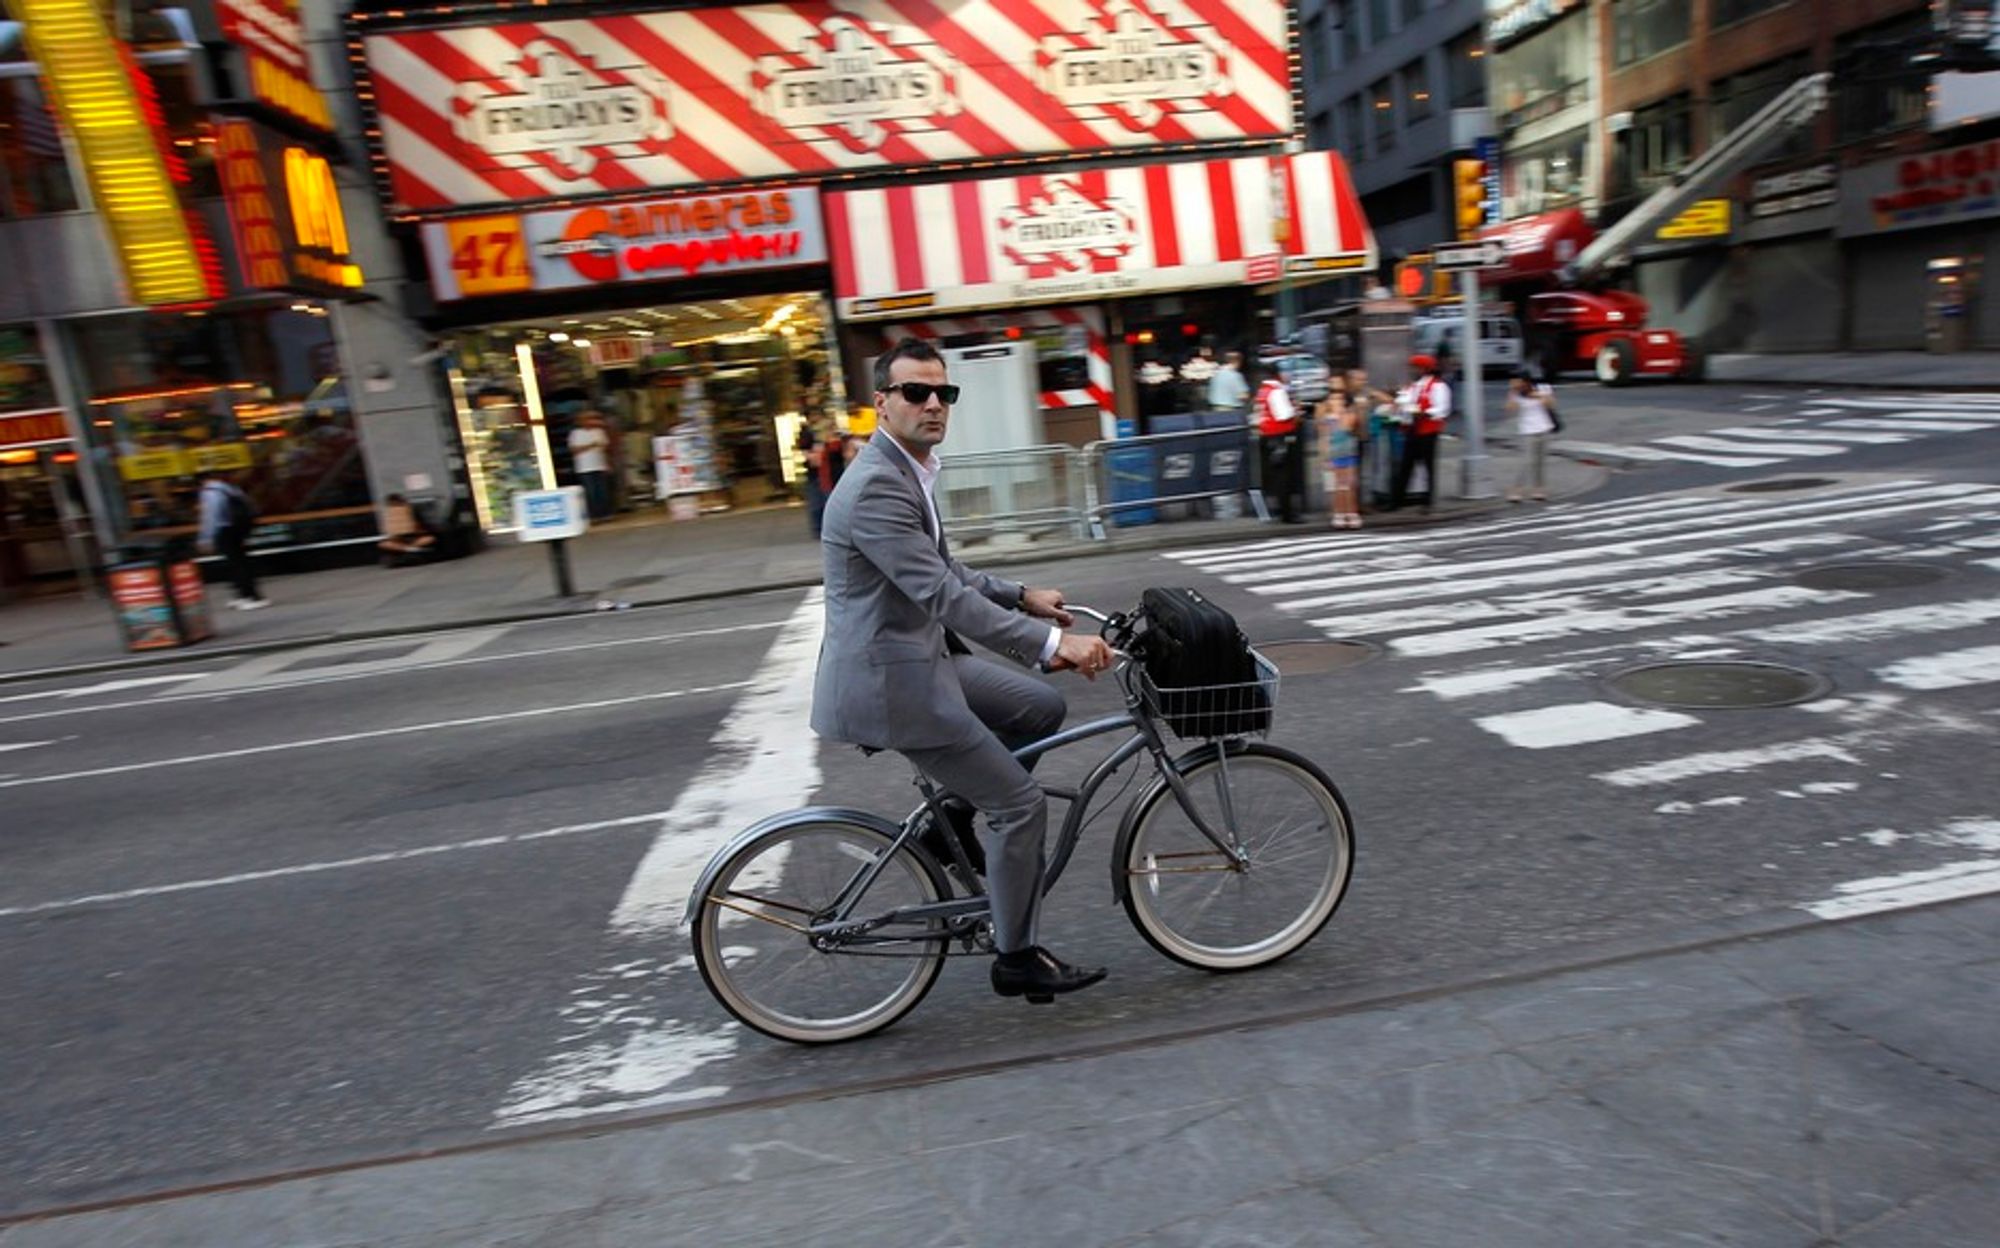 EN BIT AV OSLO? Times Square kalles «verdens veikryss» og trenger en oppgradering. Nå har Snøhetta vunnet oppdraget, med Karl Johans gate som inspirasjon.